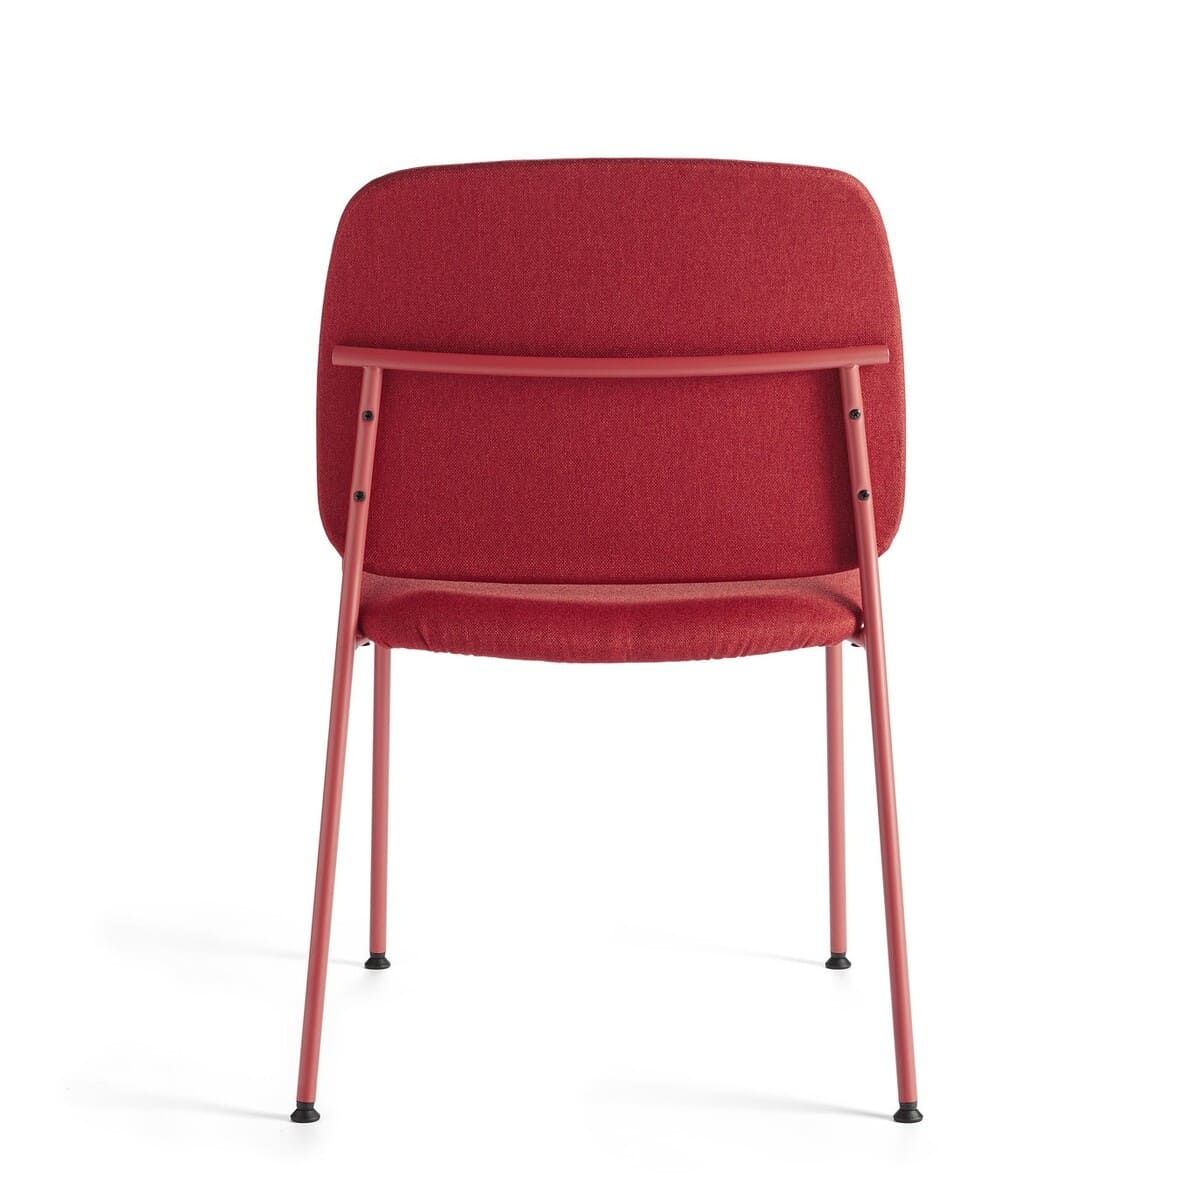 Chaise de réunion AIA tissu rouge.  Disponible dans de nombreux coloris. Idéal pour assortir votre mobilier à votre logo par exemple